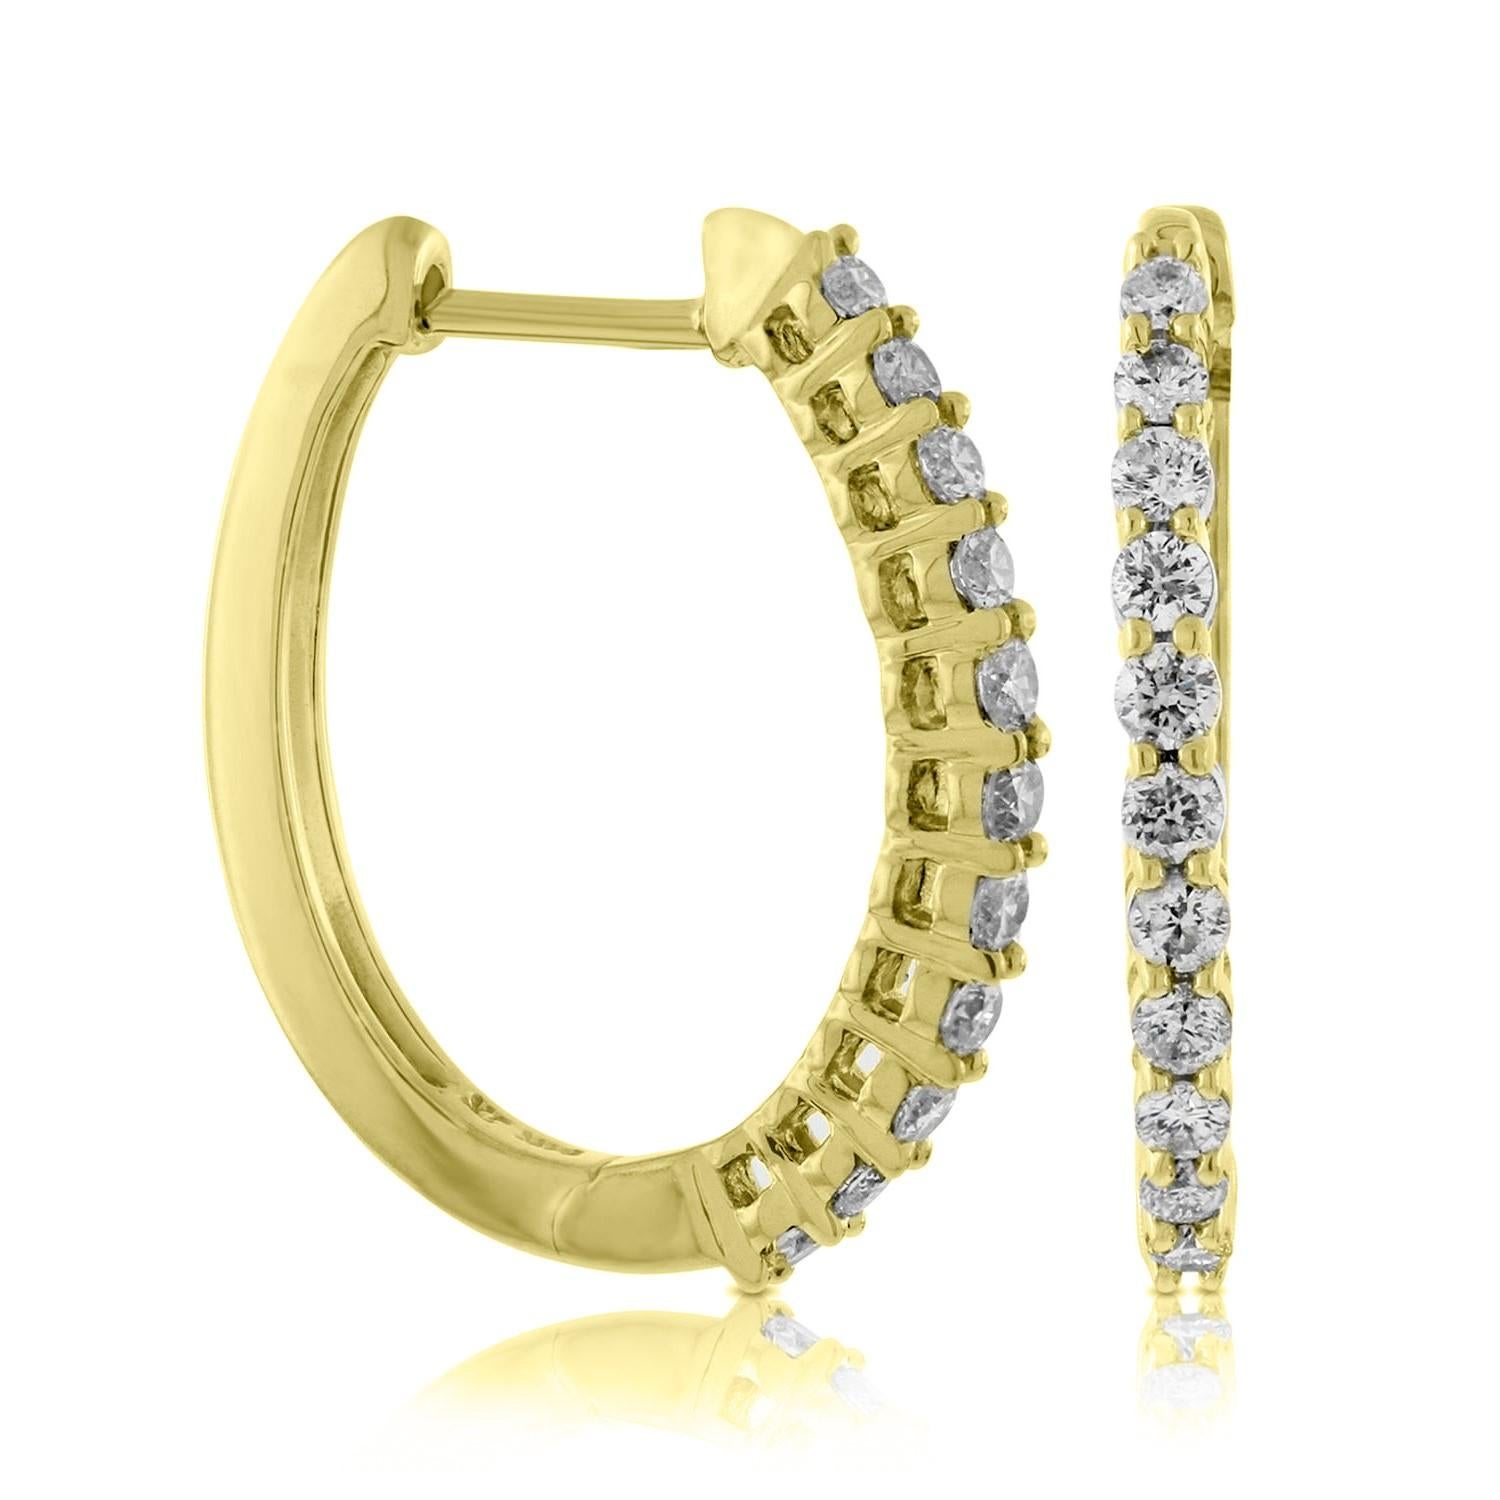 Es gibt nichts Luxuriöseres als ein unglaubliches Paar runder Diamant-Ohrringe. Diese atemberaubenden, hochglanzpolierten 14 Karat Gelbgold-Ohrringe mit rundem Reif haben insgesamt 24 runde Diamanten im Brillantschliff mit einem Gesamtgewicht von